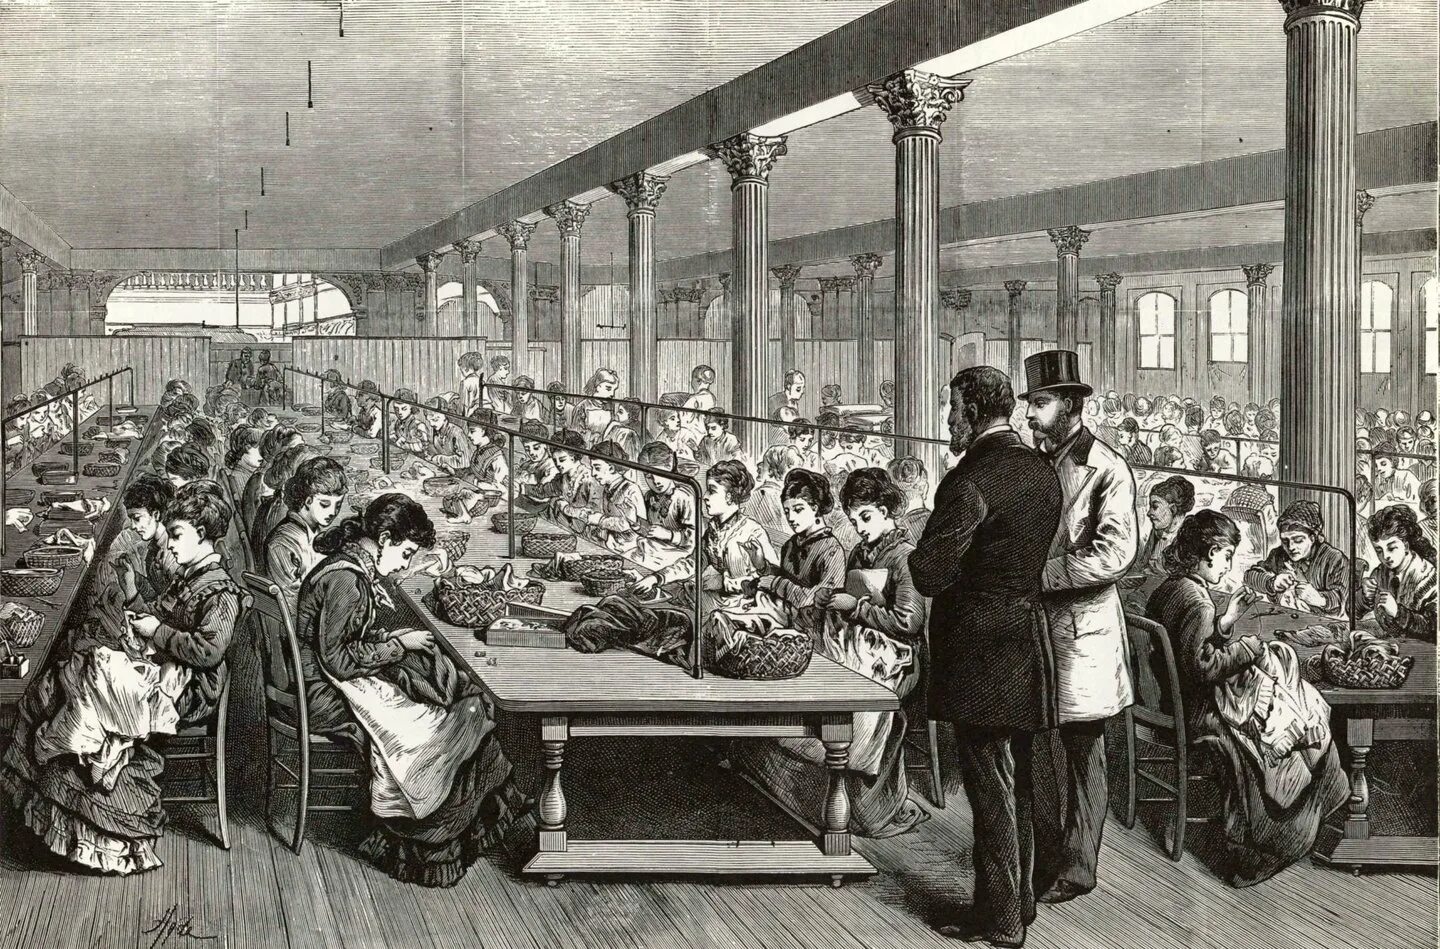 Промышленная революция в Англии 19 век. Индустриальное общество США 19 век. Промышленный переворот в США 19 век. Швейная фабрика Зингера 19 век США.